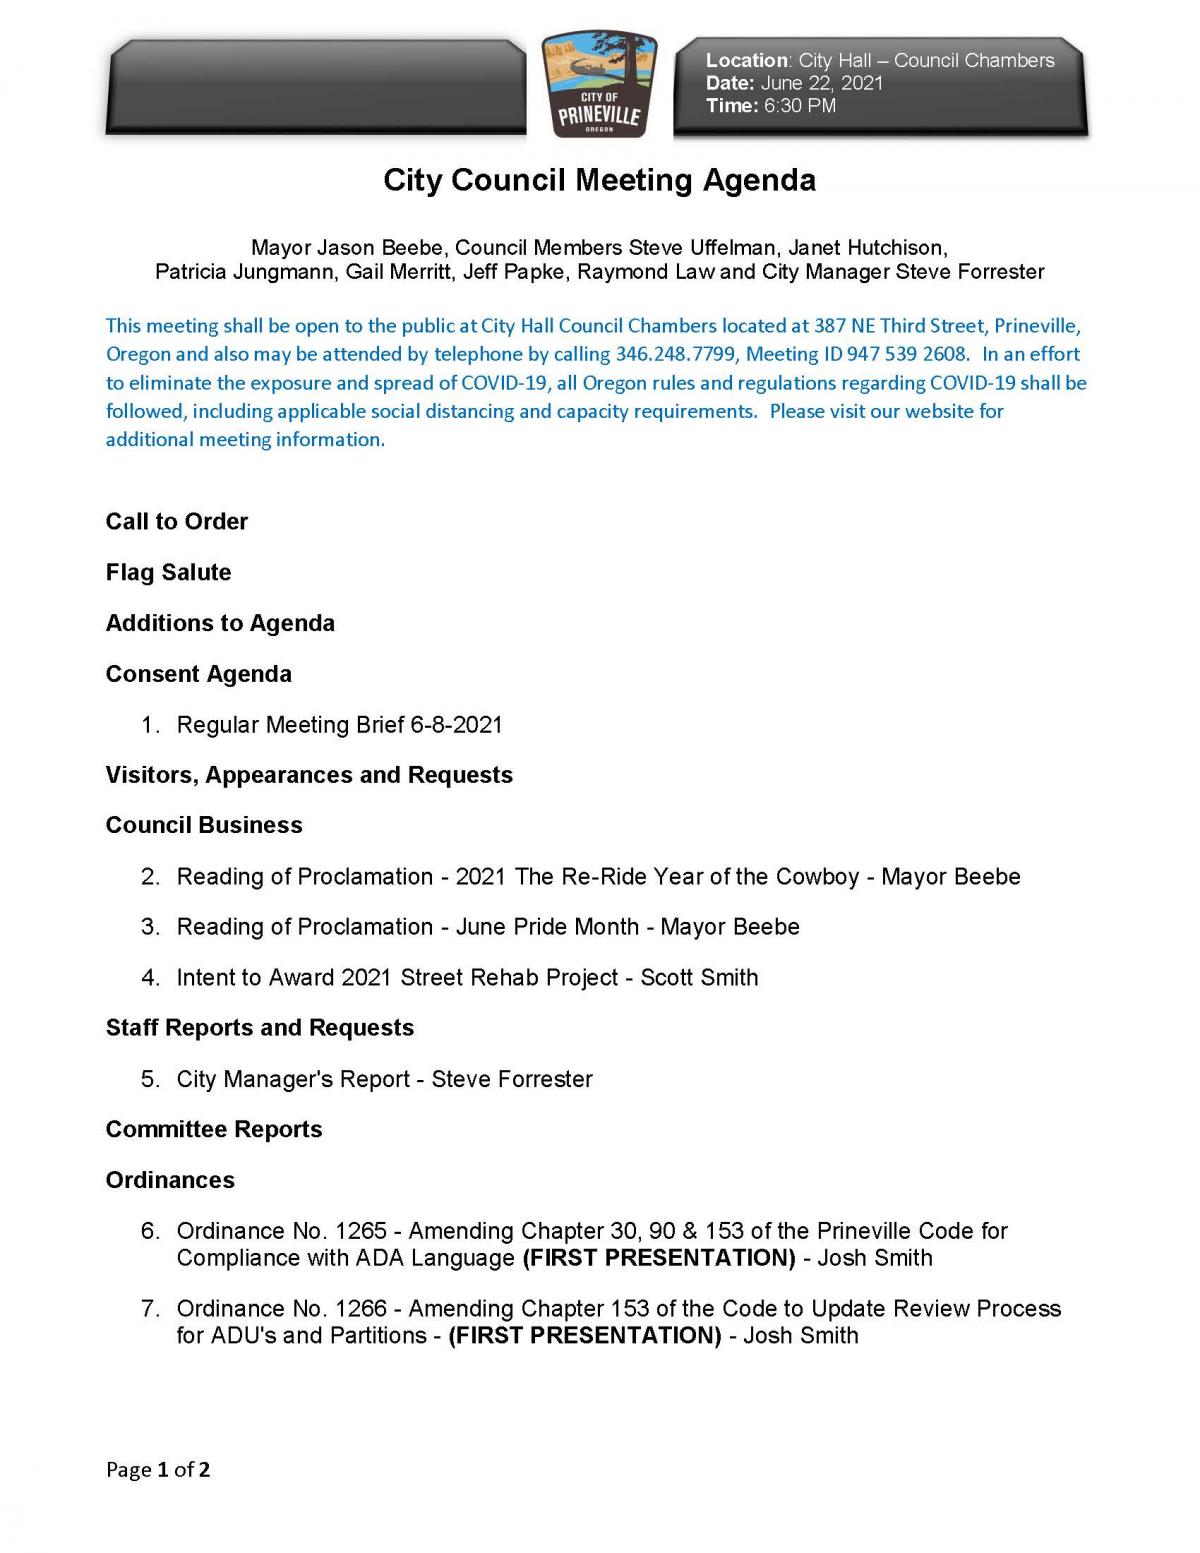 Council Agenda Page 1